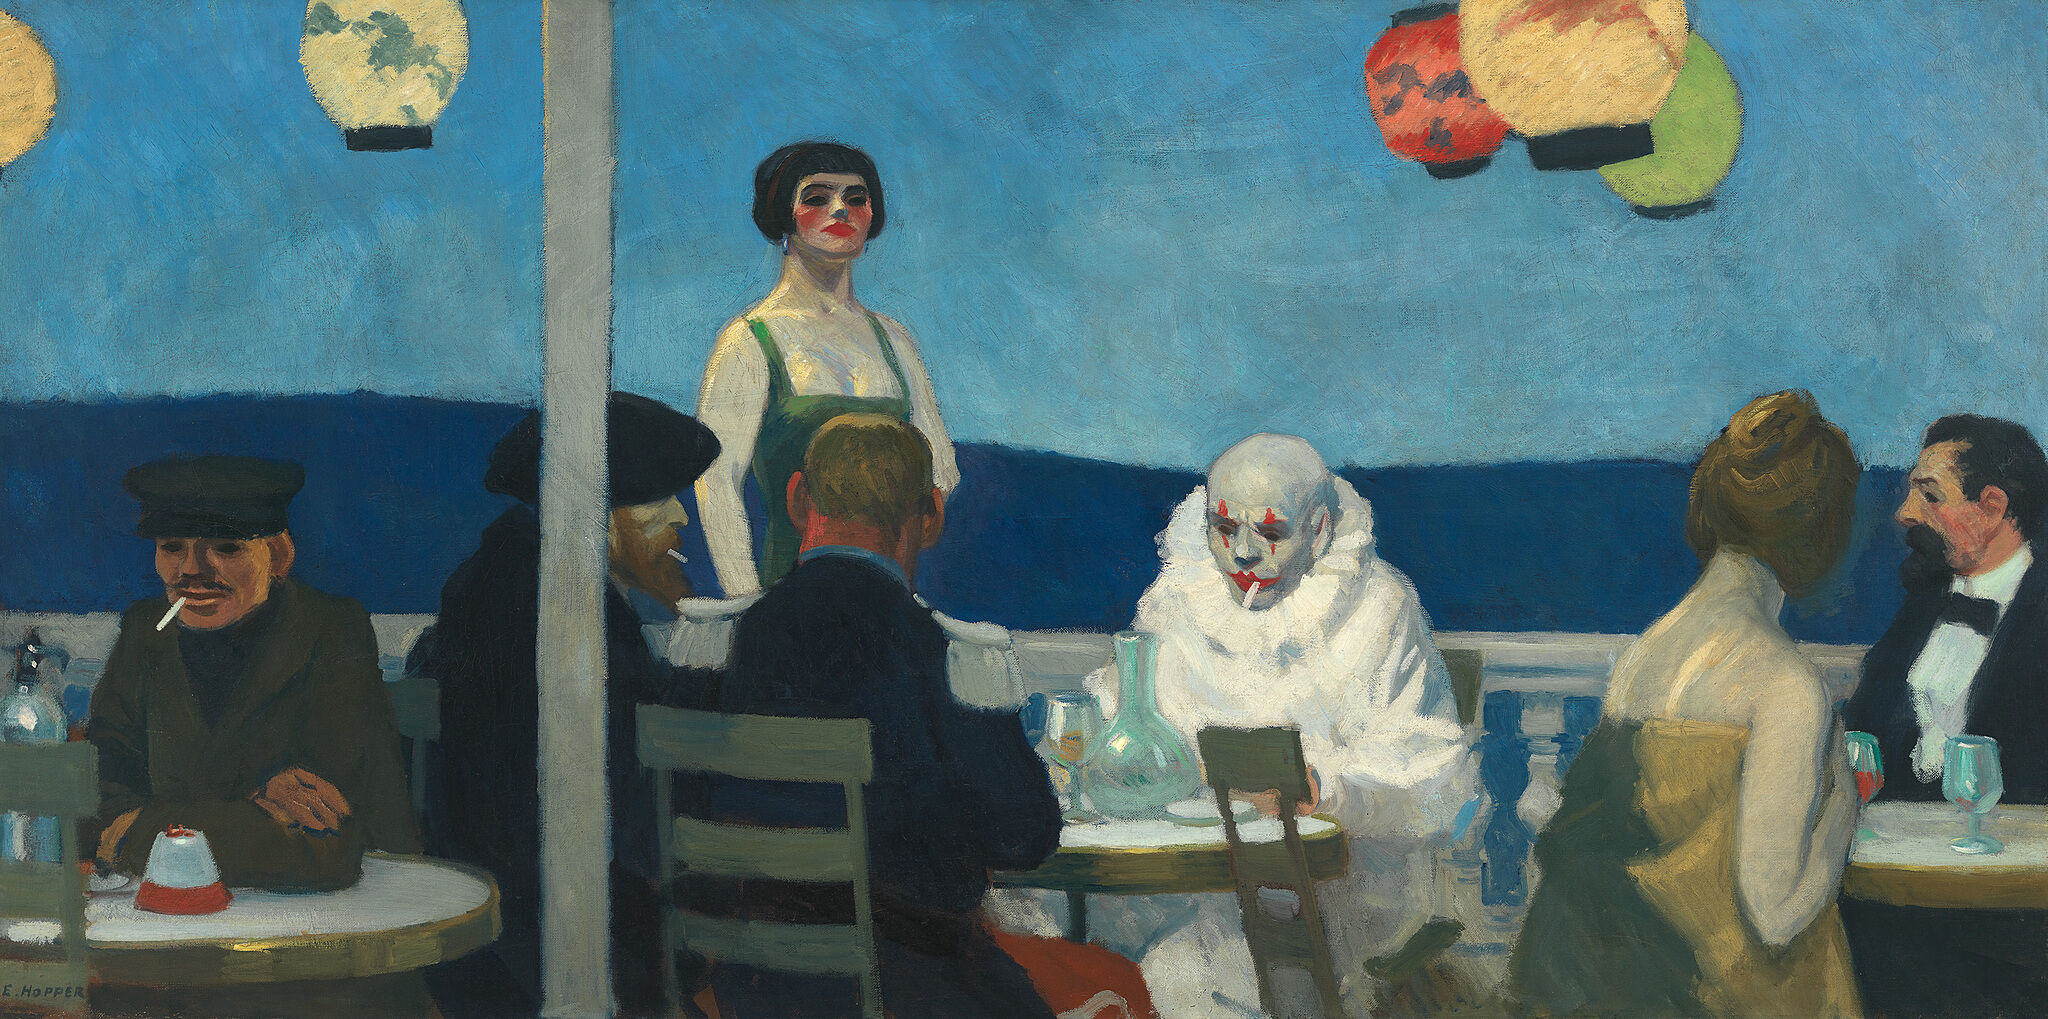 〈푸른 저녁(soir bleu)〉, 1914, 91.8×182.7cm, 캔버스에 유채, 휘트니 미술관